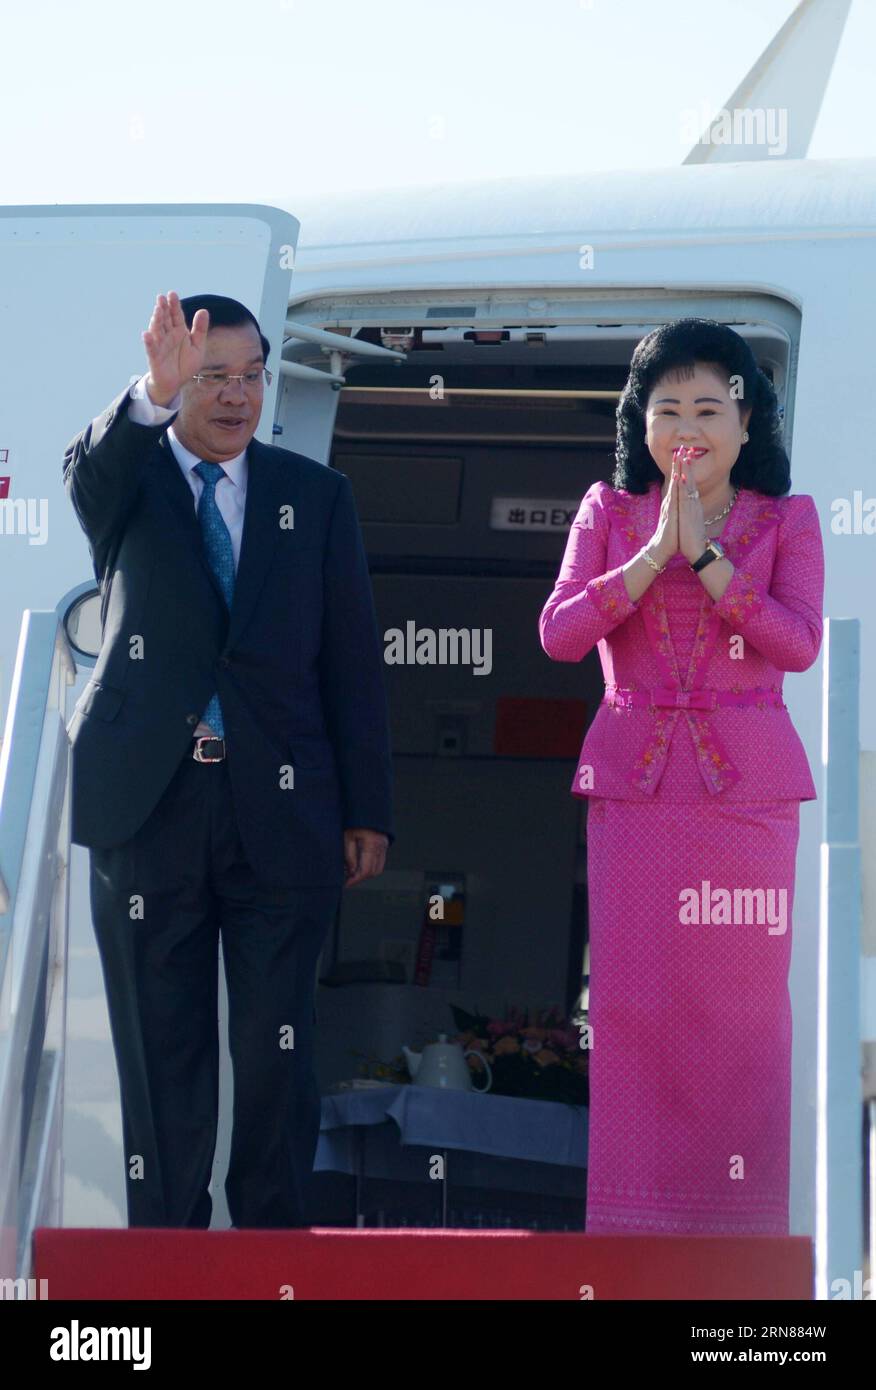 (151011) -- PHNOM PENH, -- le Premier ministre cambodgien Hun Sen (à gauche) et son épouse Bun Rany geste depuis l'avion avant leur départ à Phnom Penh, capitale du Cambodge, le 11 octobre 2015. Hun Sen a quitté Phnom Penh dimanche pour une série de réunions internationales à Macao et Beijing en Chine, qui se tiendront du 12 au 17 octobre, a déclaré un haut fonctionnaire. CAMBODGE-PHNOM PENH-PREMIER MINISTRE-DÉPART Sovannara PUBLICATIONxNOTxINxCHN 151011 Phnom Penh les premiers ministres cambodgiens HUN Sen l et son épouse Bun Rany geste de l'avion avant leur départ à Phnom Penh capitale du Cambodge OCT 11 2015 HUN Sen le Banque D'Images